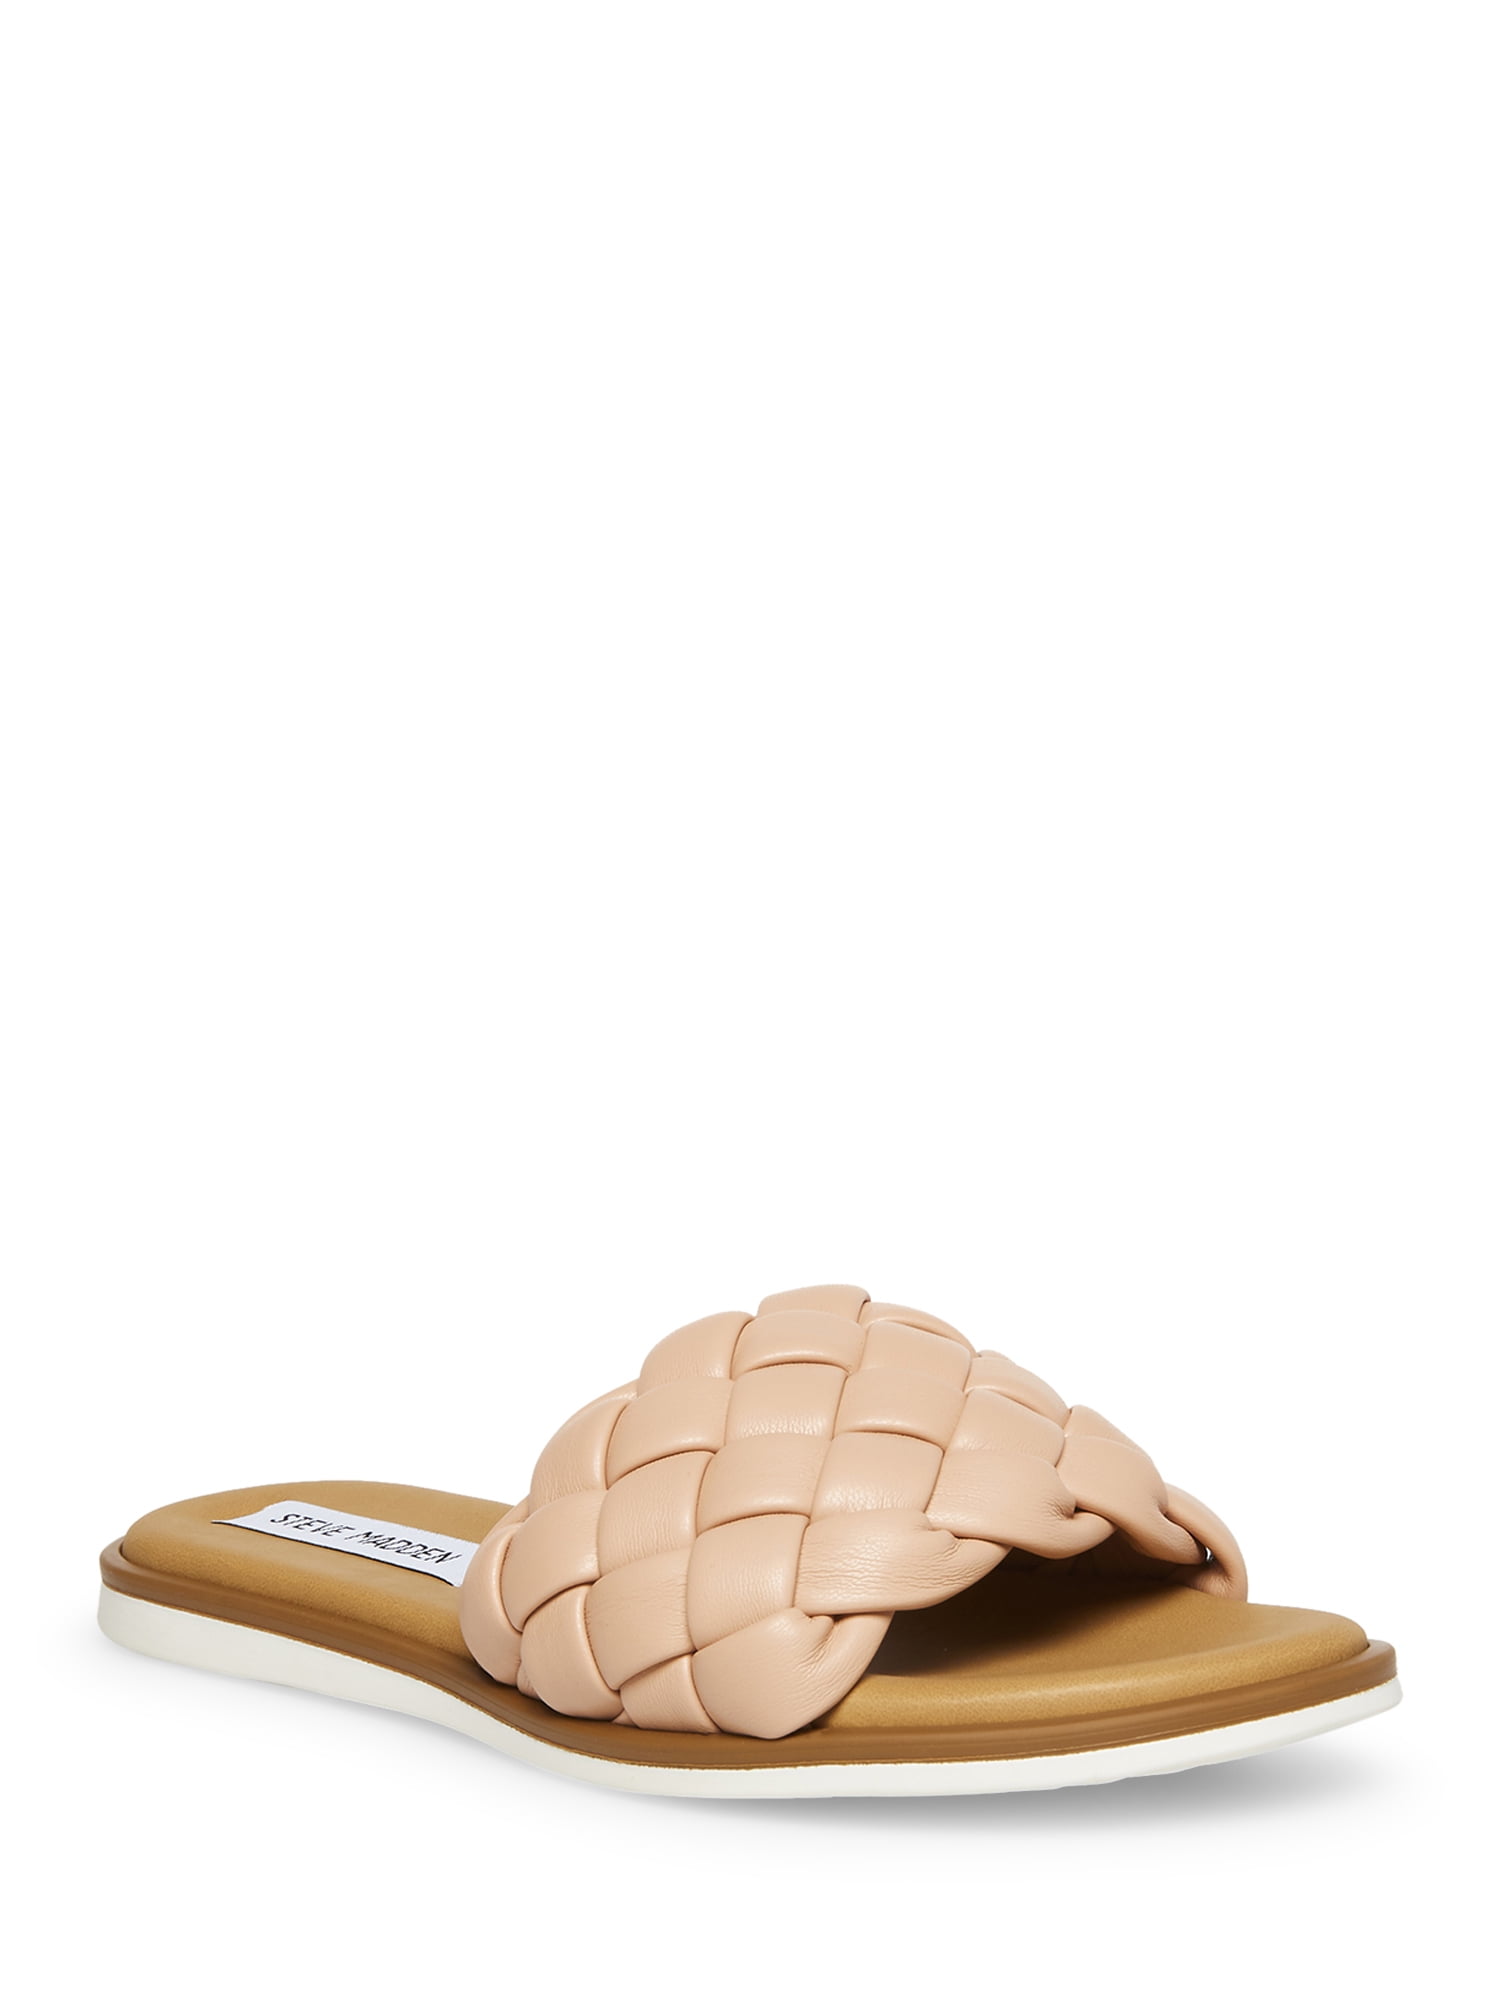 Steve Madden Paislee Woven Slide Sandal (Women's) - Walmart.com